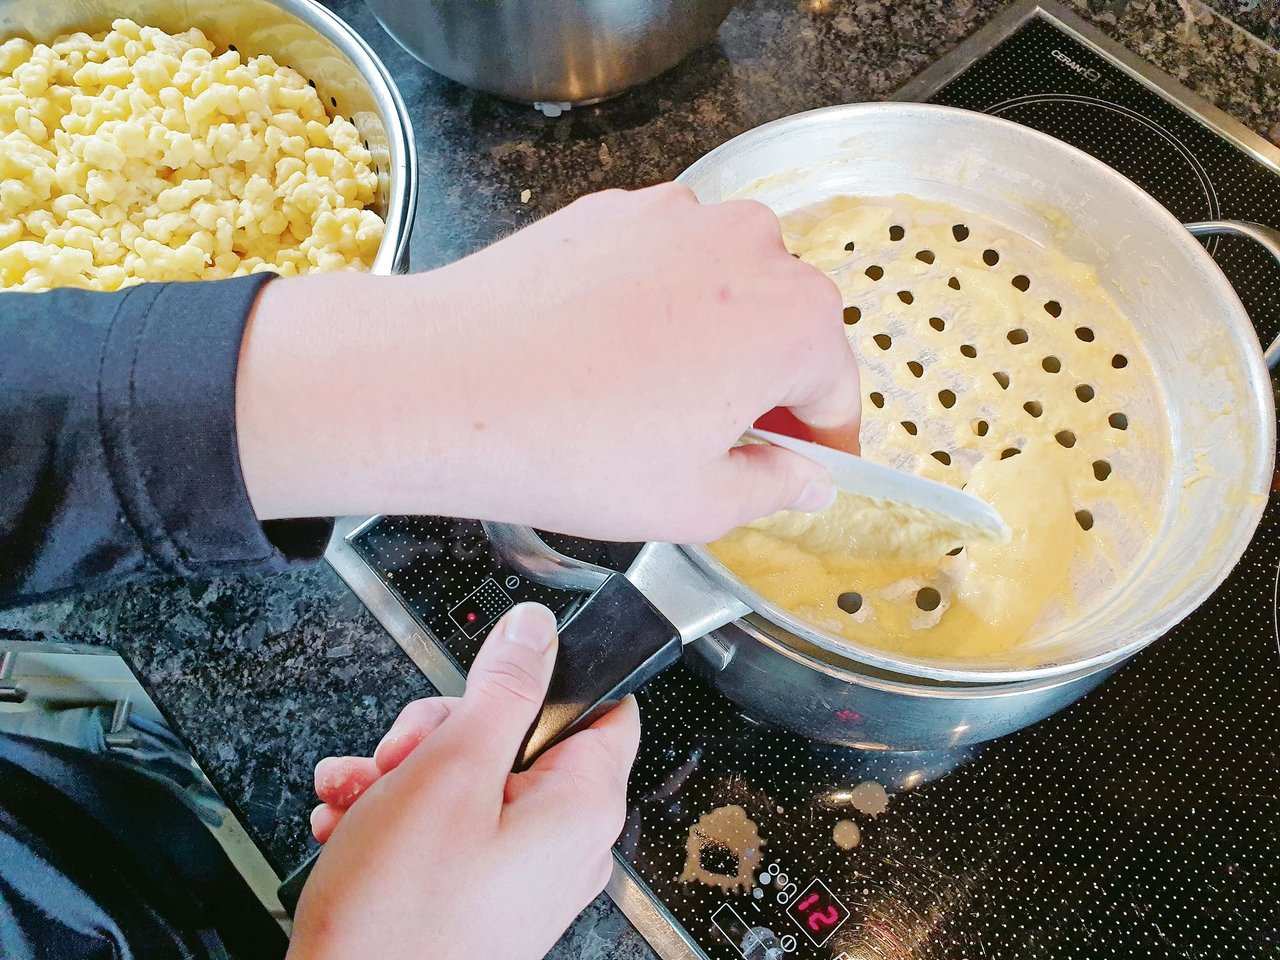 Aus Eiern, Flüssigkeit, Mehl und Salz entsteht der Teig. Oben rechts ist das Knöpflisieb im Einsatz, unten links werden Gnocchi mit der Schere aus dem Spritzsack ins kochende Wasser portioniert. Es gibt schnellere Mahlzeiten – aber das Resultat überzeugt.